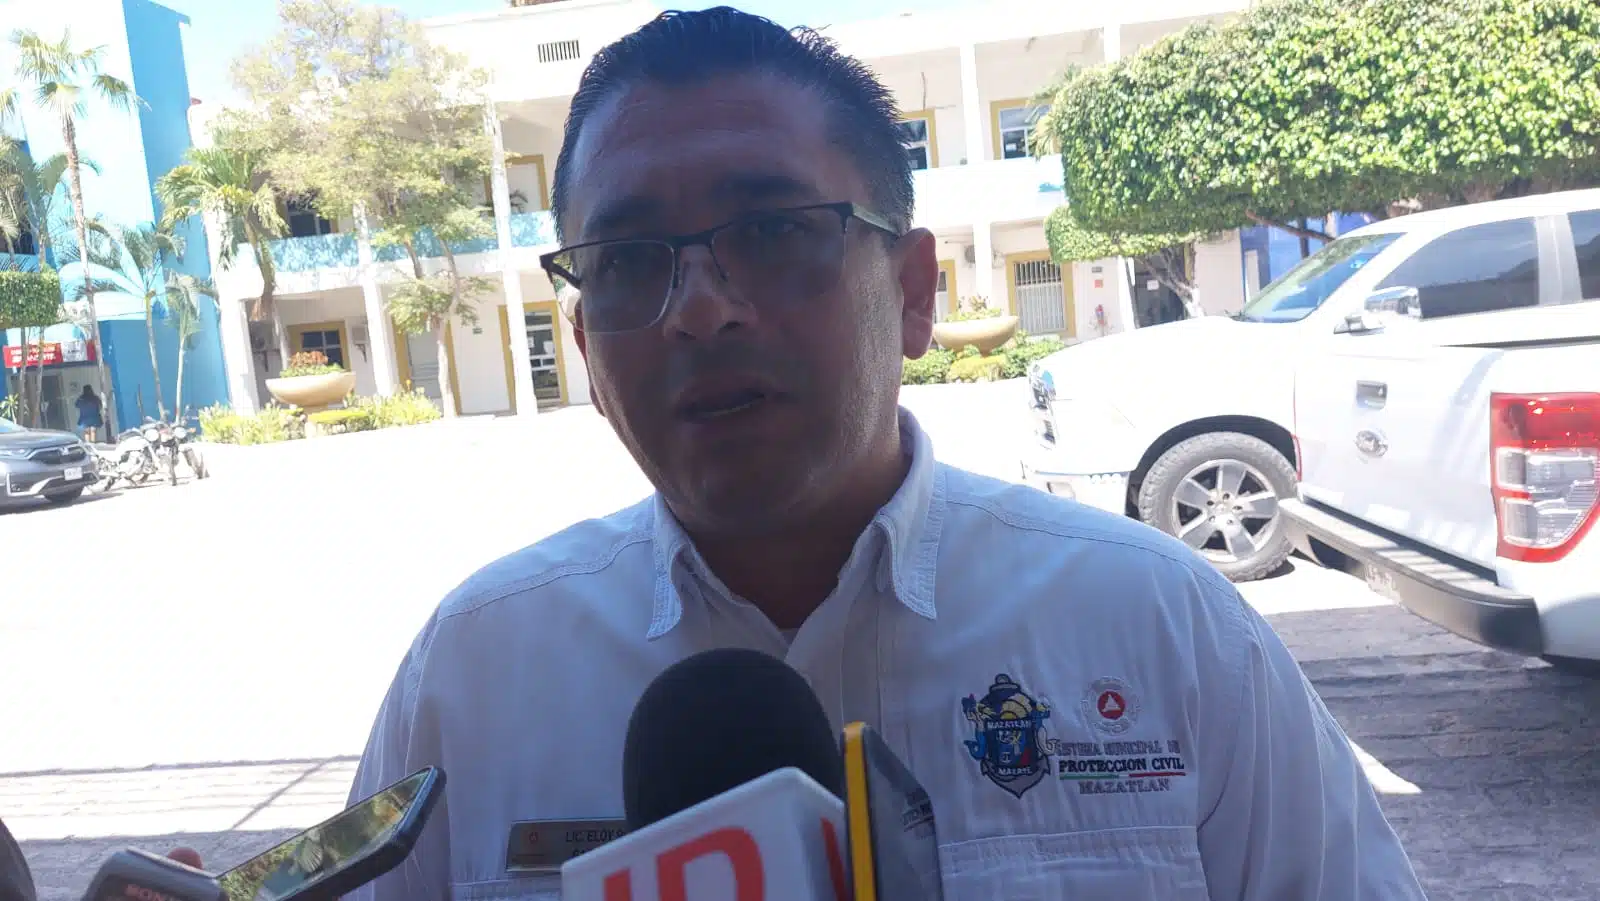 El coordinador de Protección Civil, Eloy Ruiz Gastélum, consideró como un tema primordial para el municipio de Mazatlán el encuentro deportivo, por lo que participarán todas las corporaciones tanto de seguridad como de auxilio